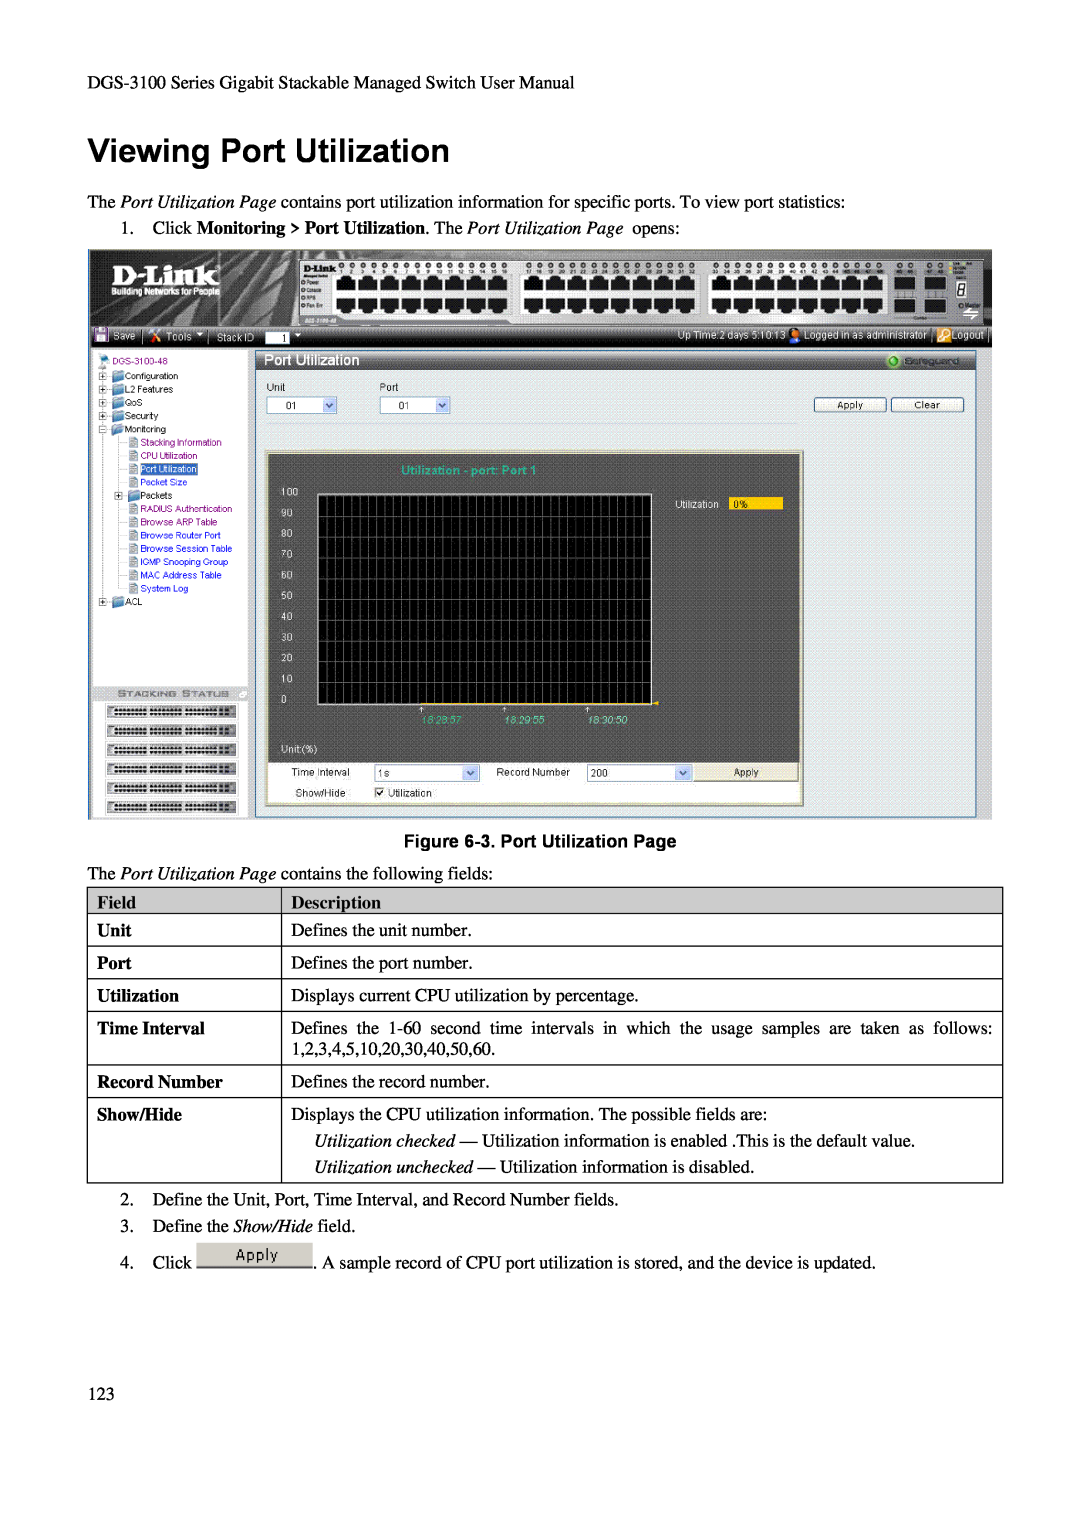 D-Link DGS-3100 user manual Viewing Port Utilization, 3. Port Utilization Page, Description 